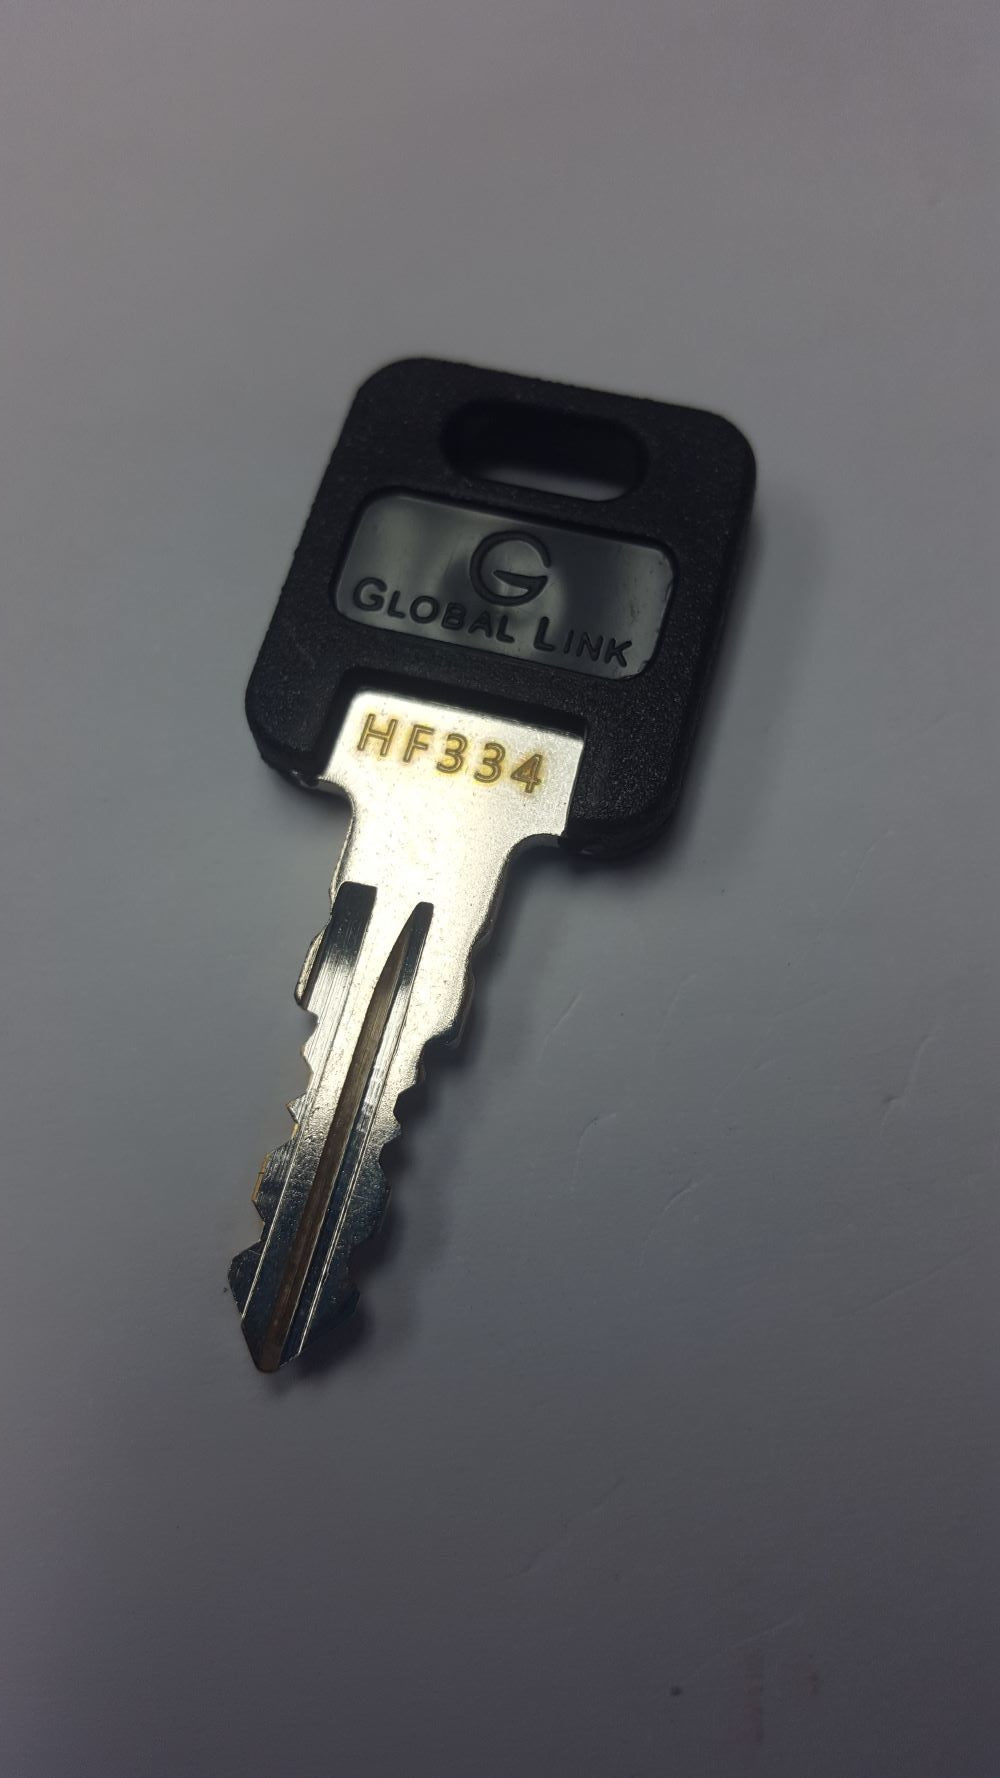 CPG KEY-HF-334 Pre-cut Stamped FIC Replacemnt HF334 Key